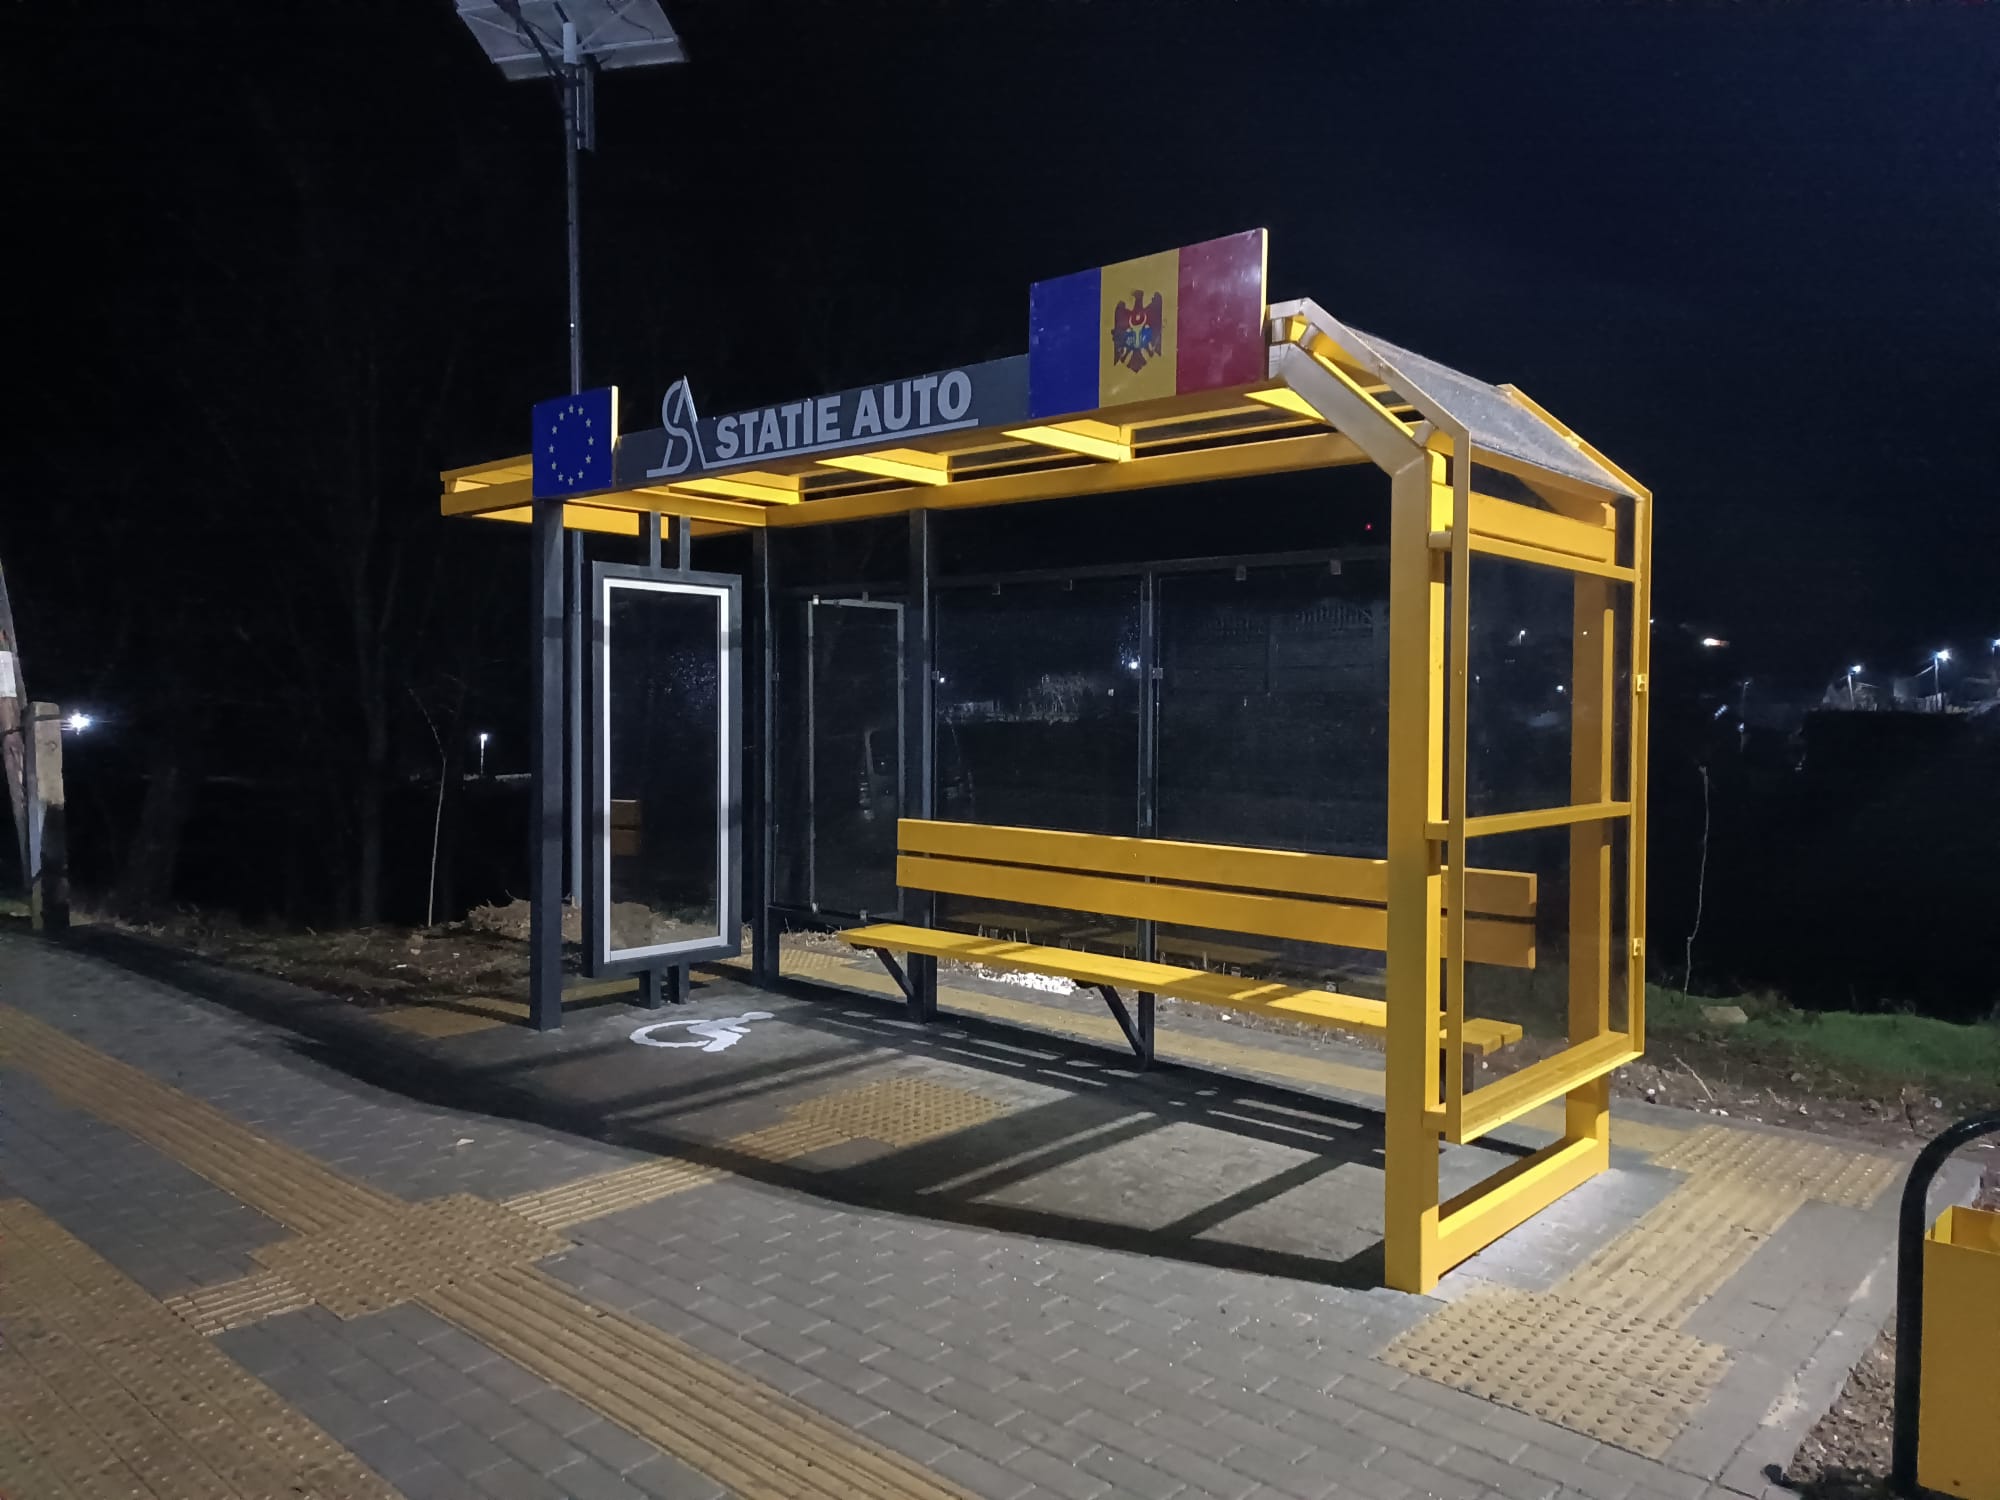 FOTO Noi stații de așteptare în Moldova. Au coșuri de gunoi, stâlpi de iluminat stradal și panouri fotovoltaice